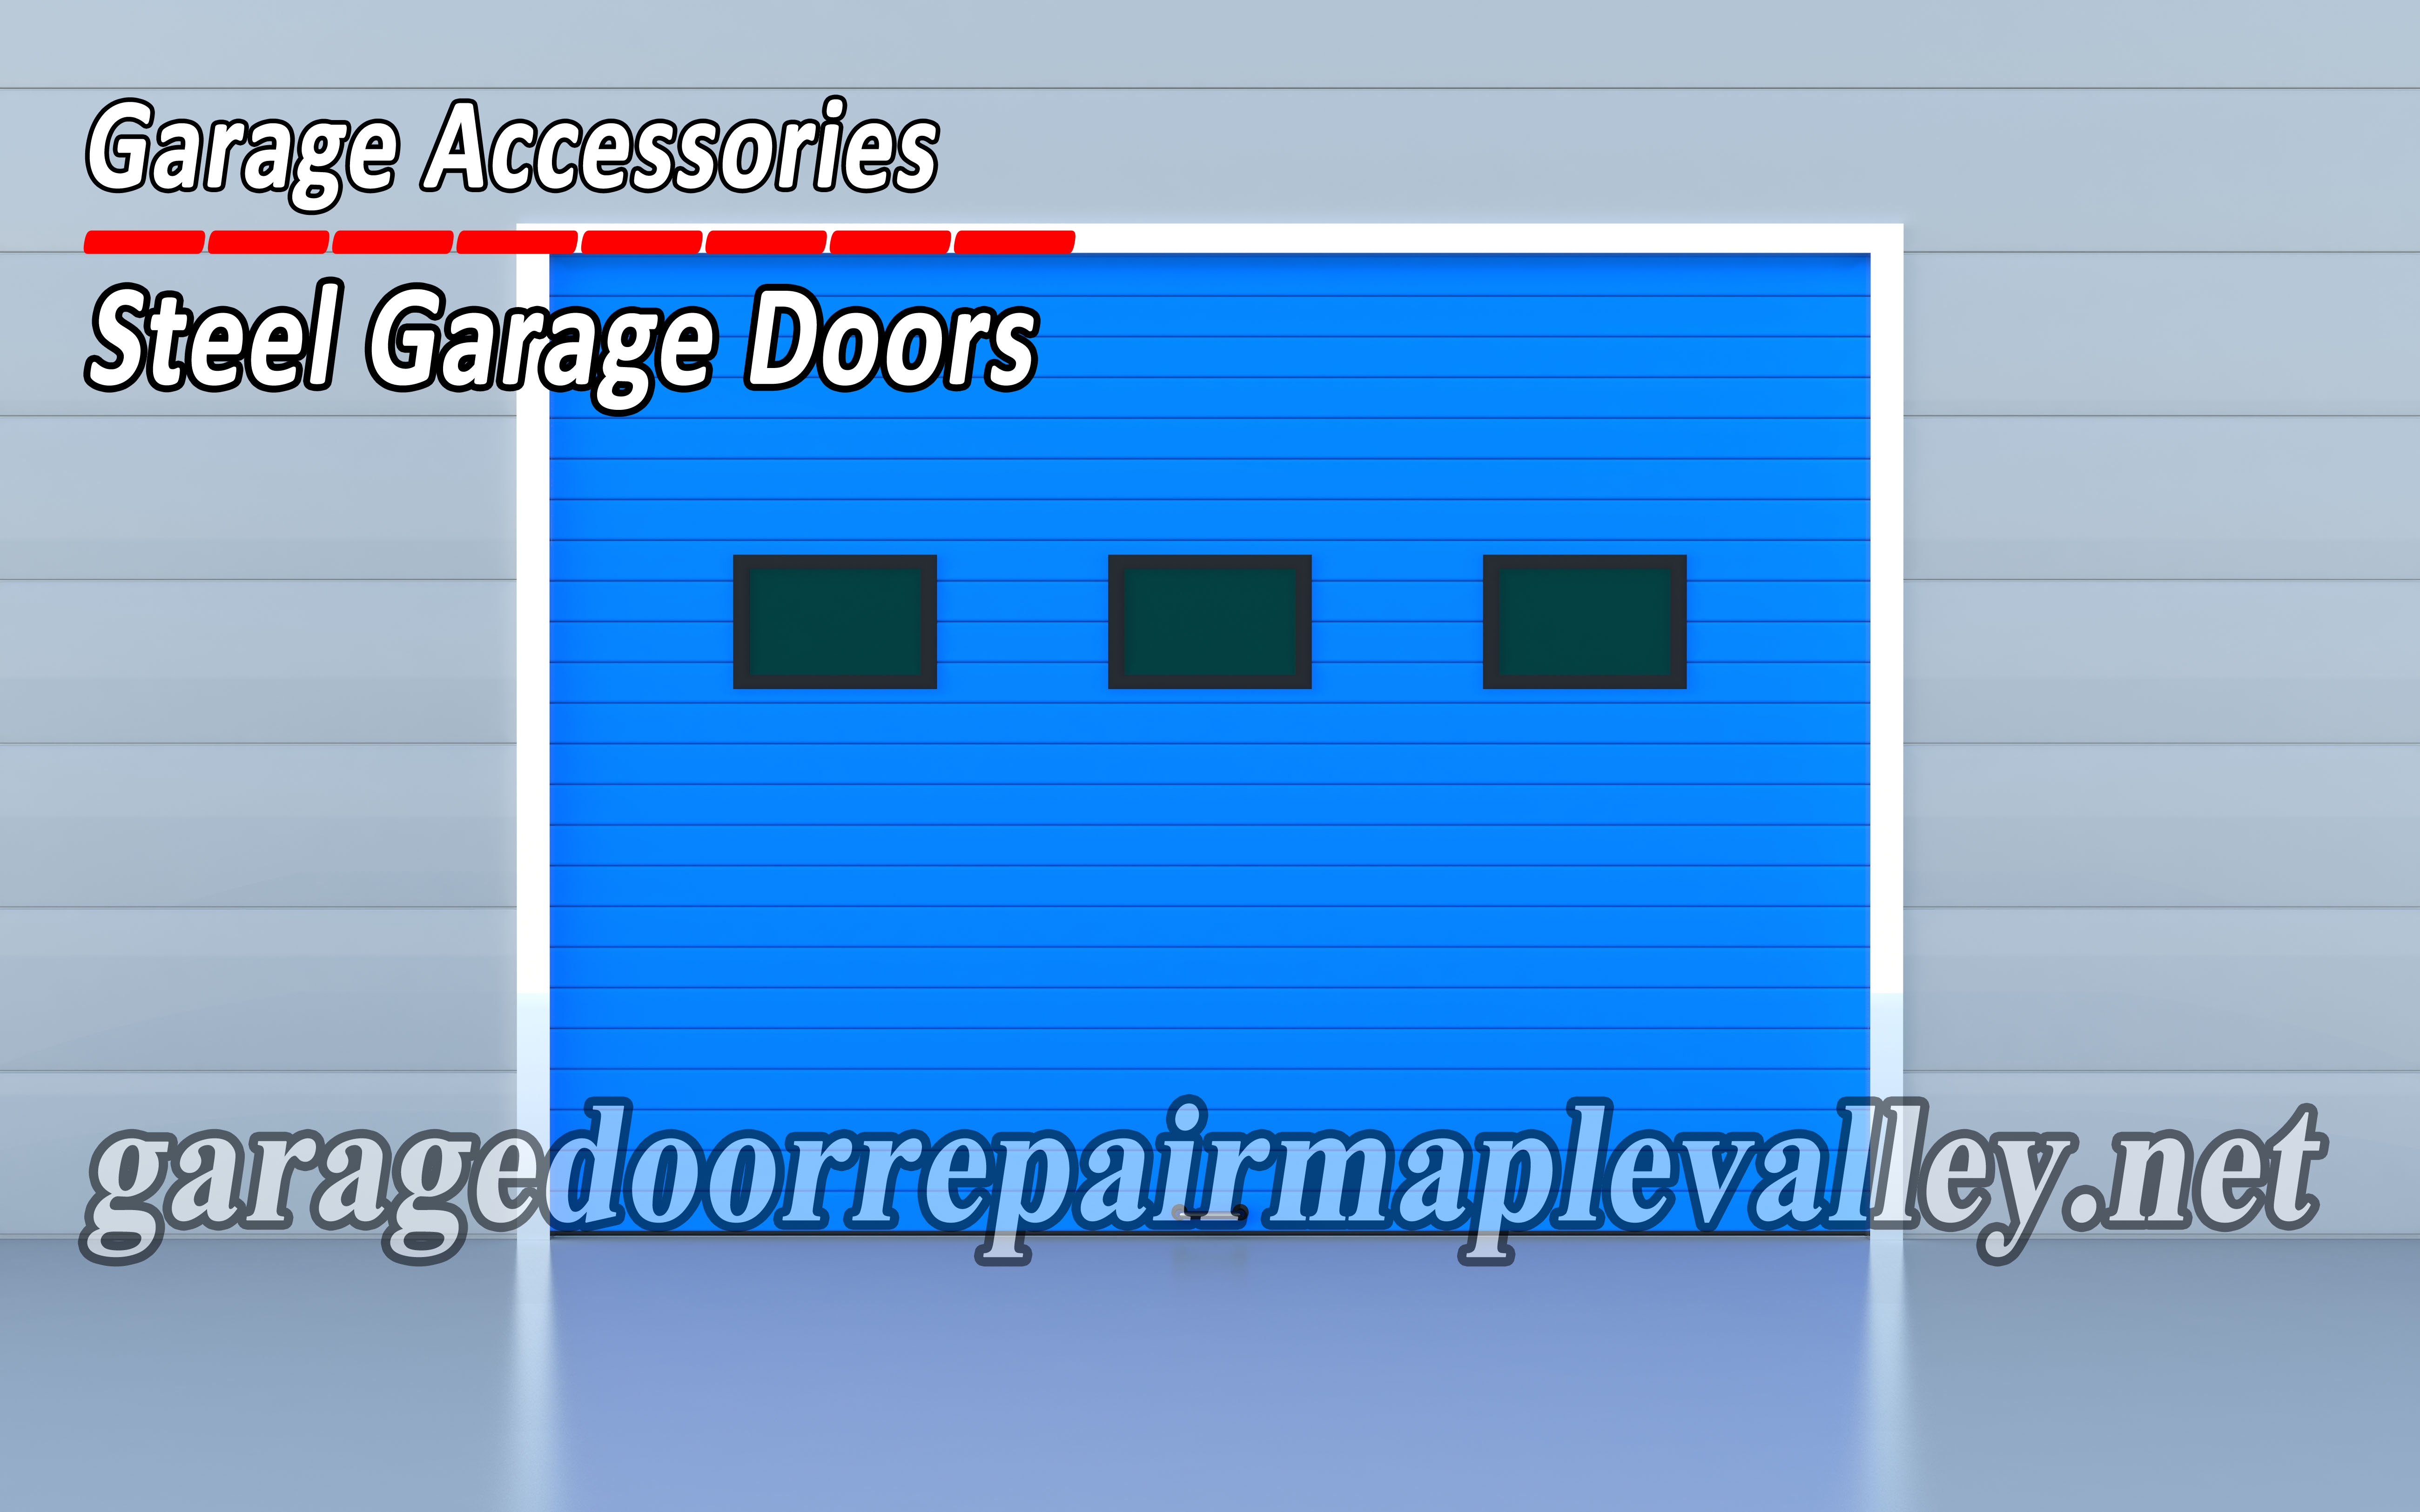 Maple-valley-garage-accessories